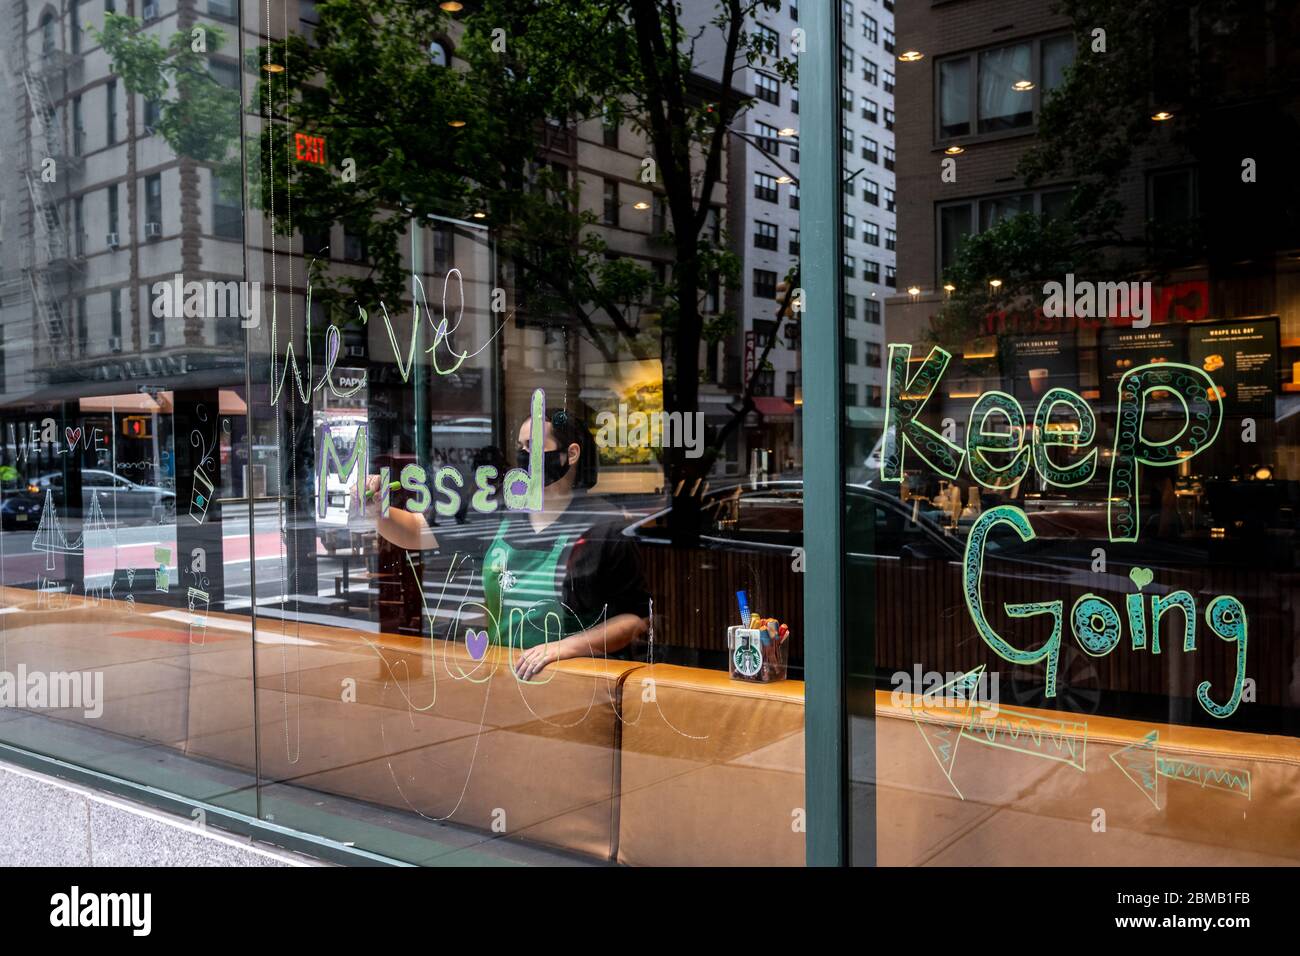 New York, USA. Mai 2020. Ein Starbucks Mitarbeiter trägt eine Gesichtsmaske, wenn sie im Coffee Shop-Fenster der Upper East Side ein Schild mit der Aufschrift „Wir haben dich verpasst“ malt, da sie erst nach über einem Monat, nachdem sie aufgrund der COVID-19-Krise geschlossen wurde, wieder für Take-Outs geöffnet werden. Kredit: Enrique Shore/Alamy Live News Stockfoto